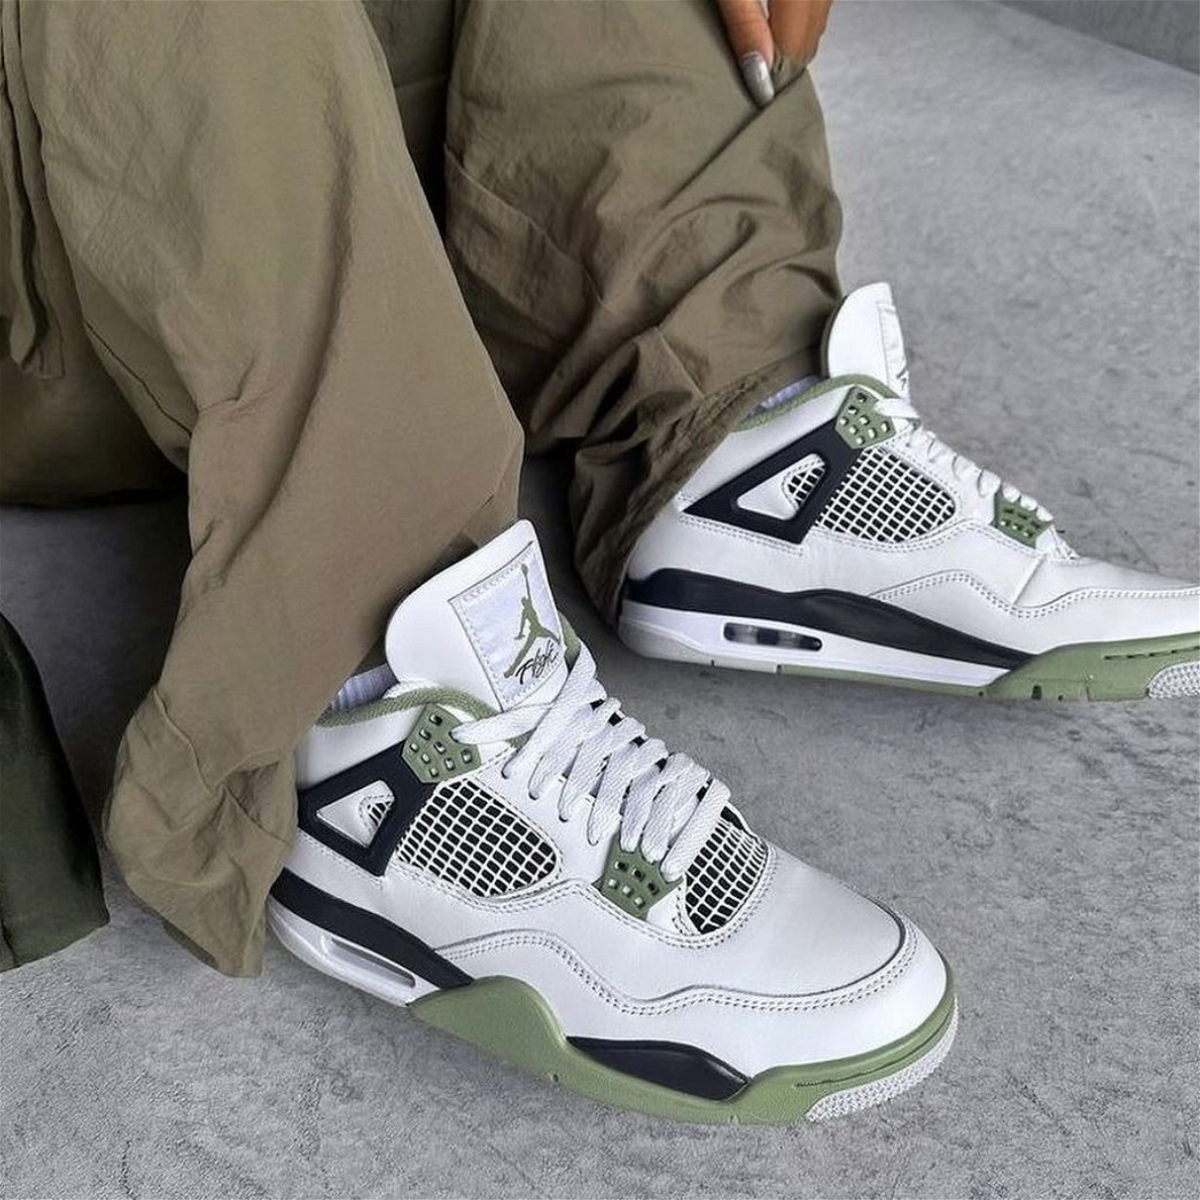 Streetwear Guide: Jak nejlépe nosit Air Jordan 4?